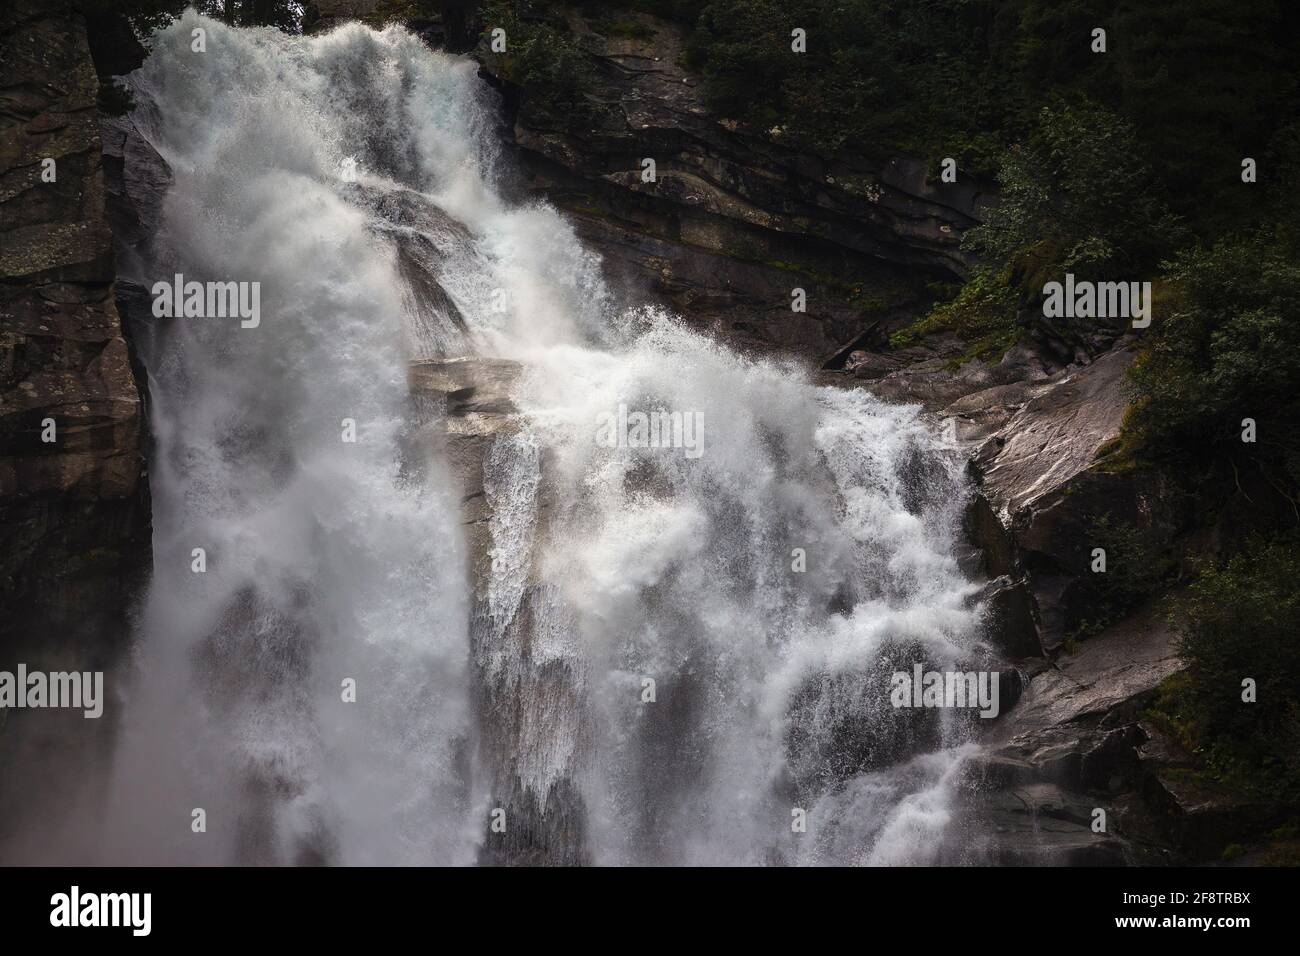 The Krimml Waterfalls (Krimmler Wasserfälle). Austrian Alps. Europe. Stock Photo